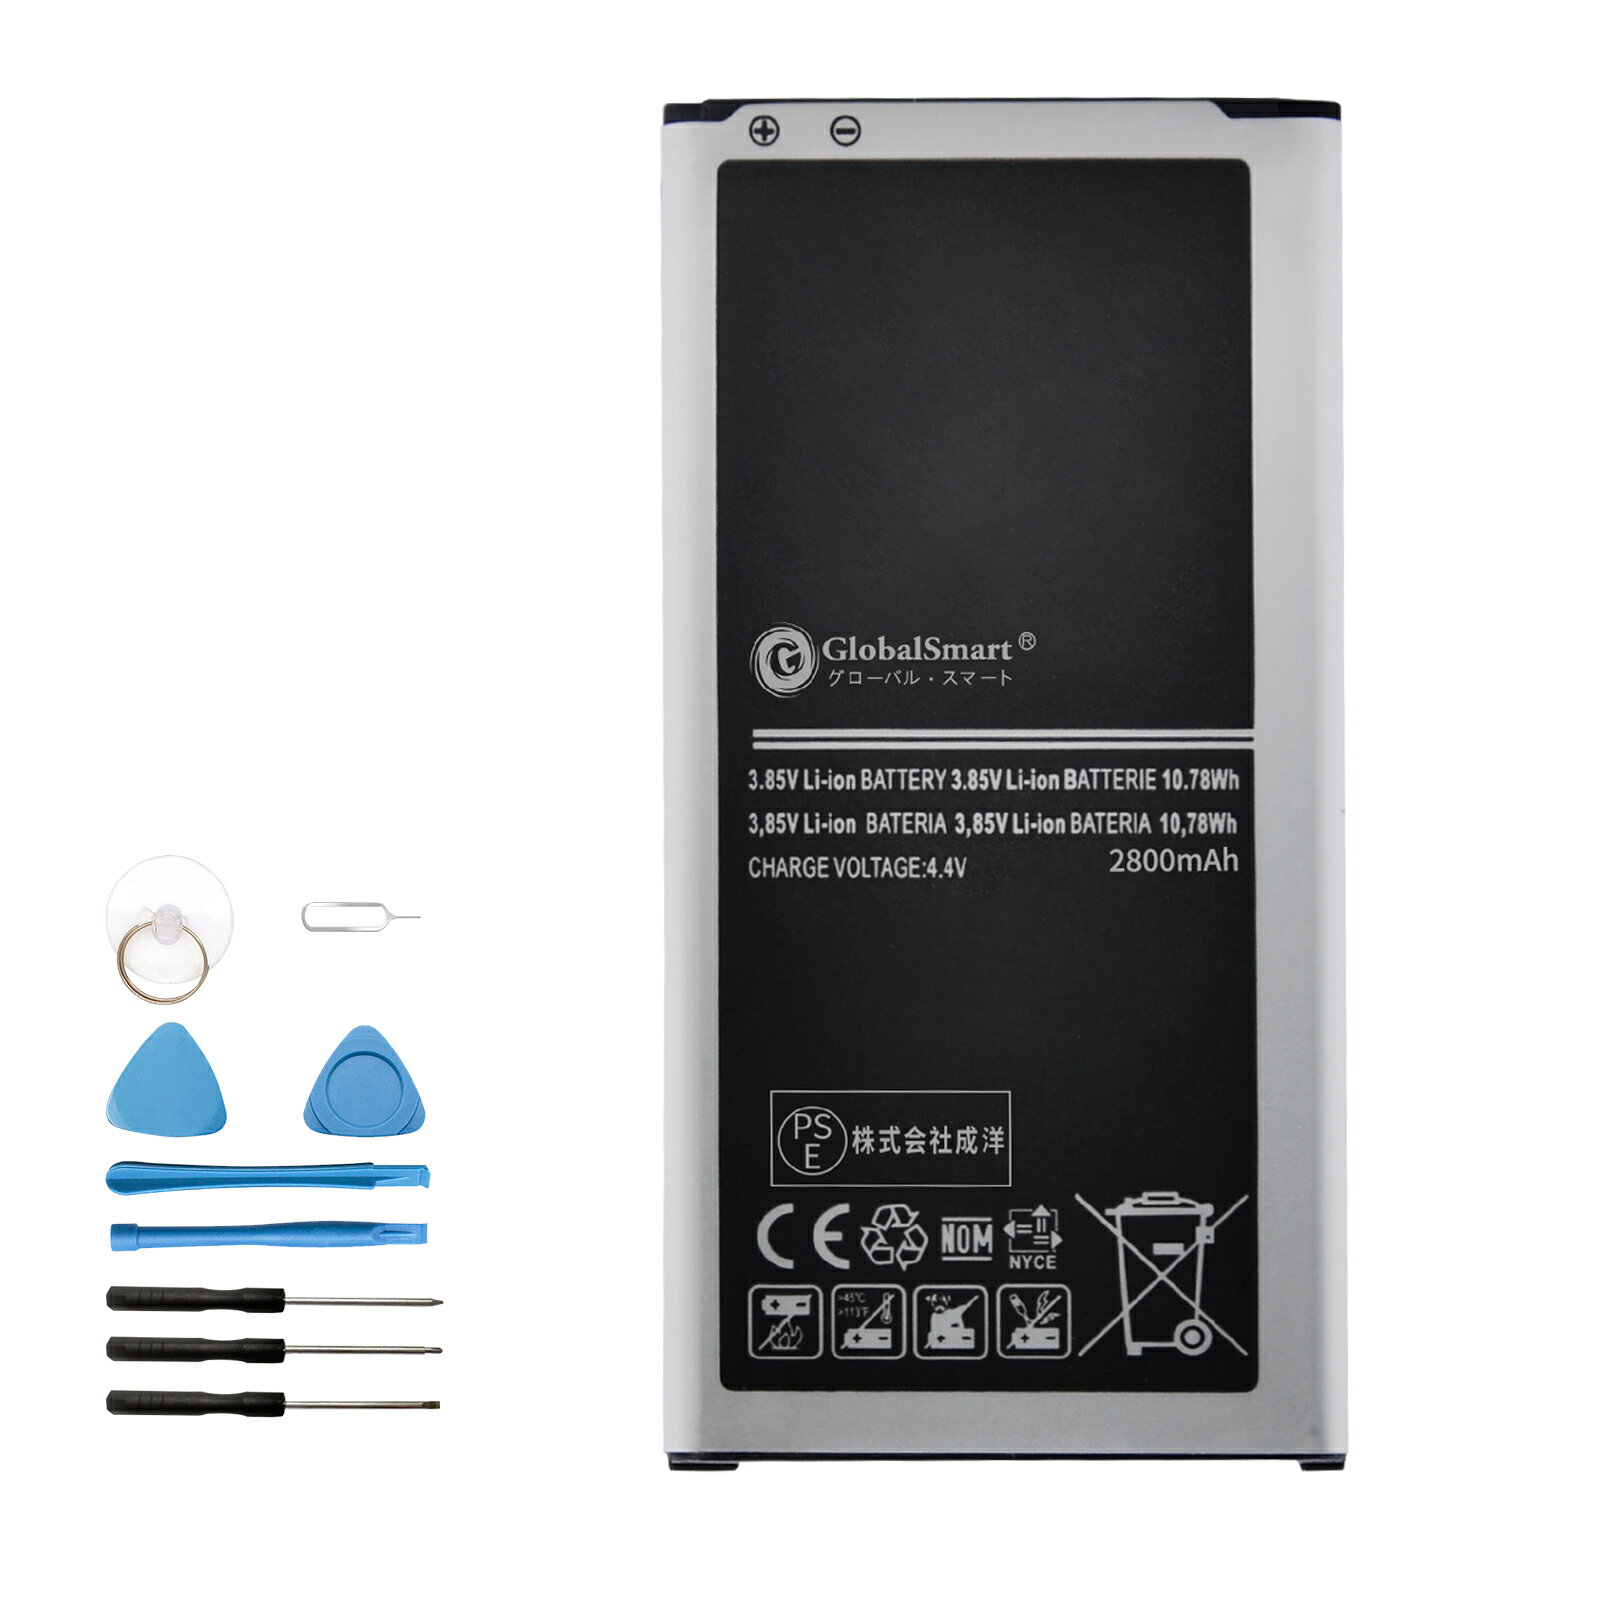 【新品1年保証】GALAXY S5 対応用 電池パック【2800mAh 3.85V】GlobalSmart 高性能 交換バッテリー PSE認証済み